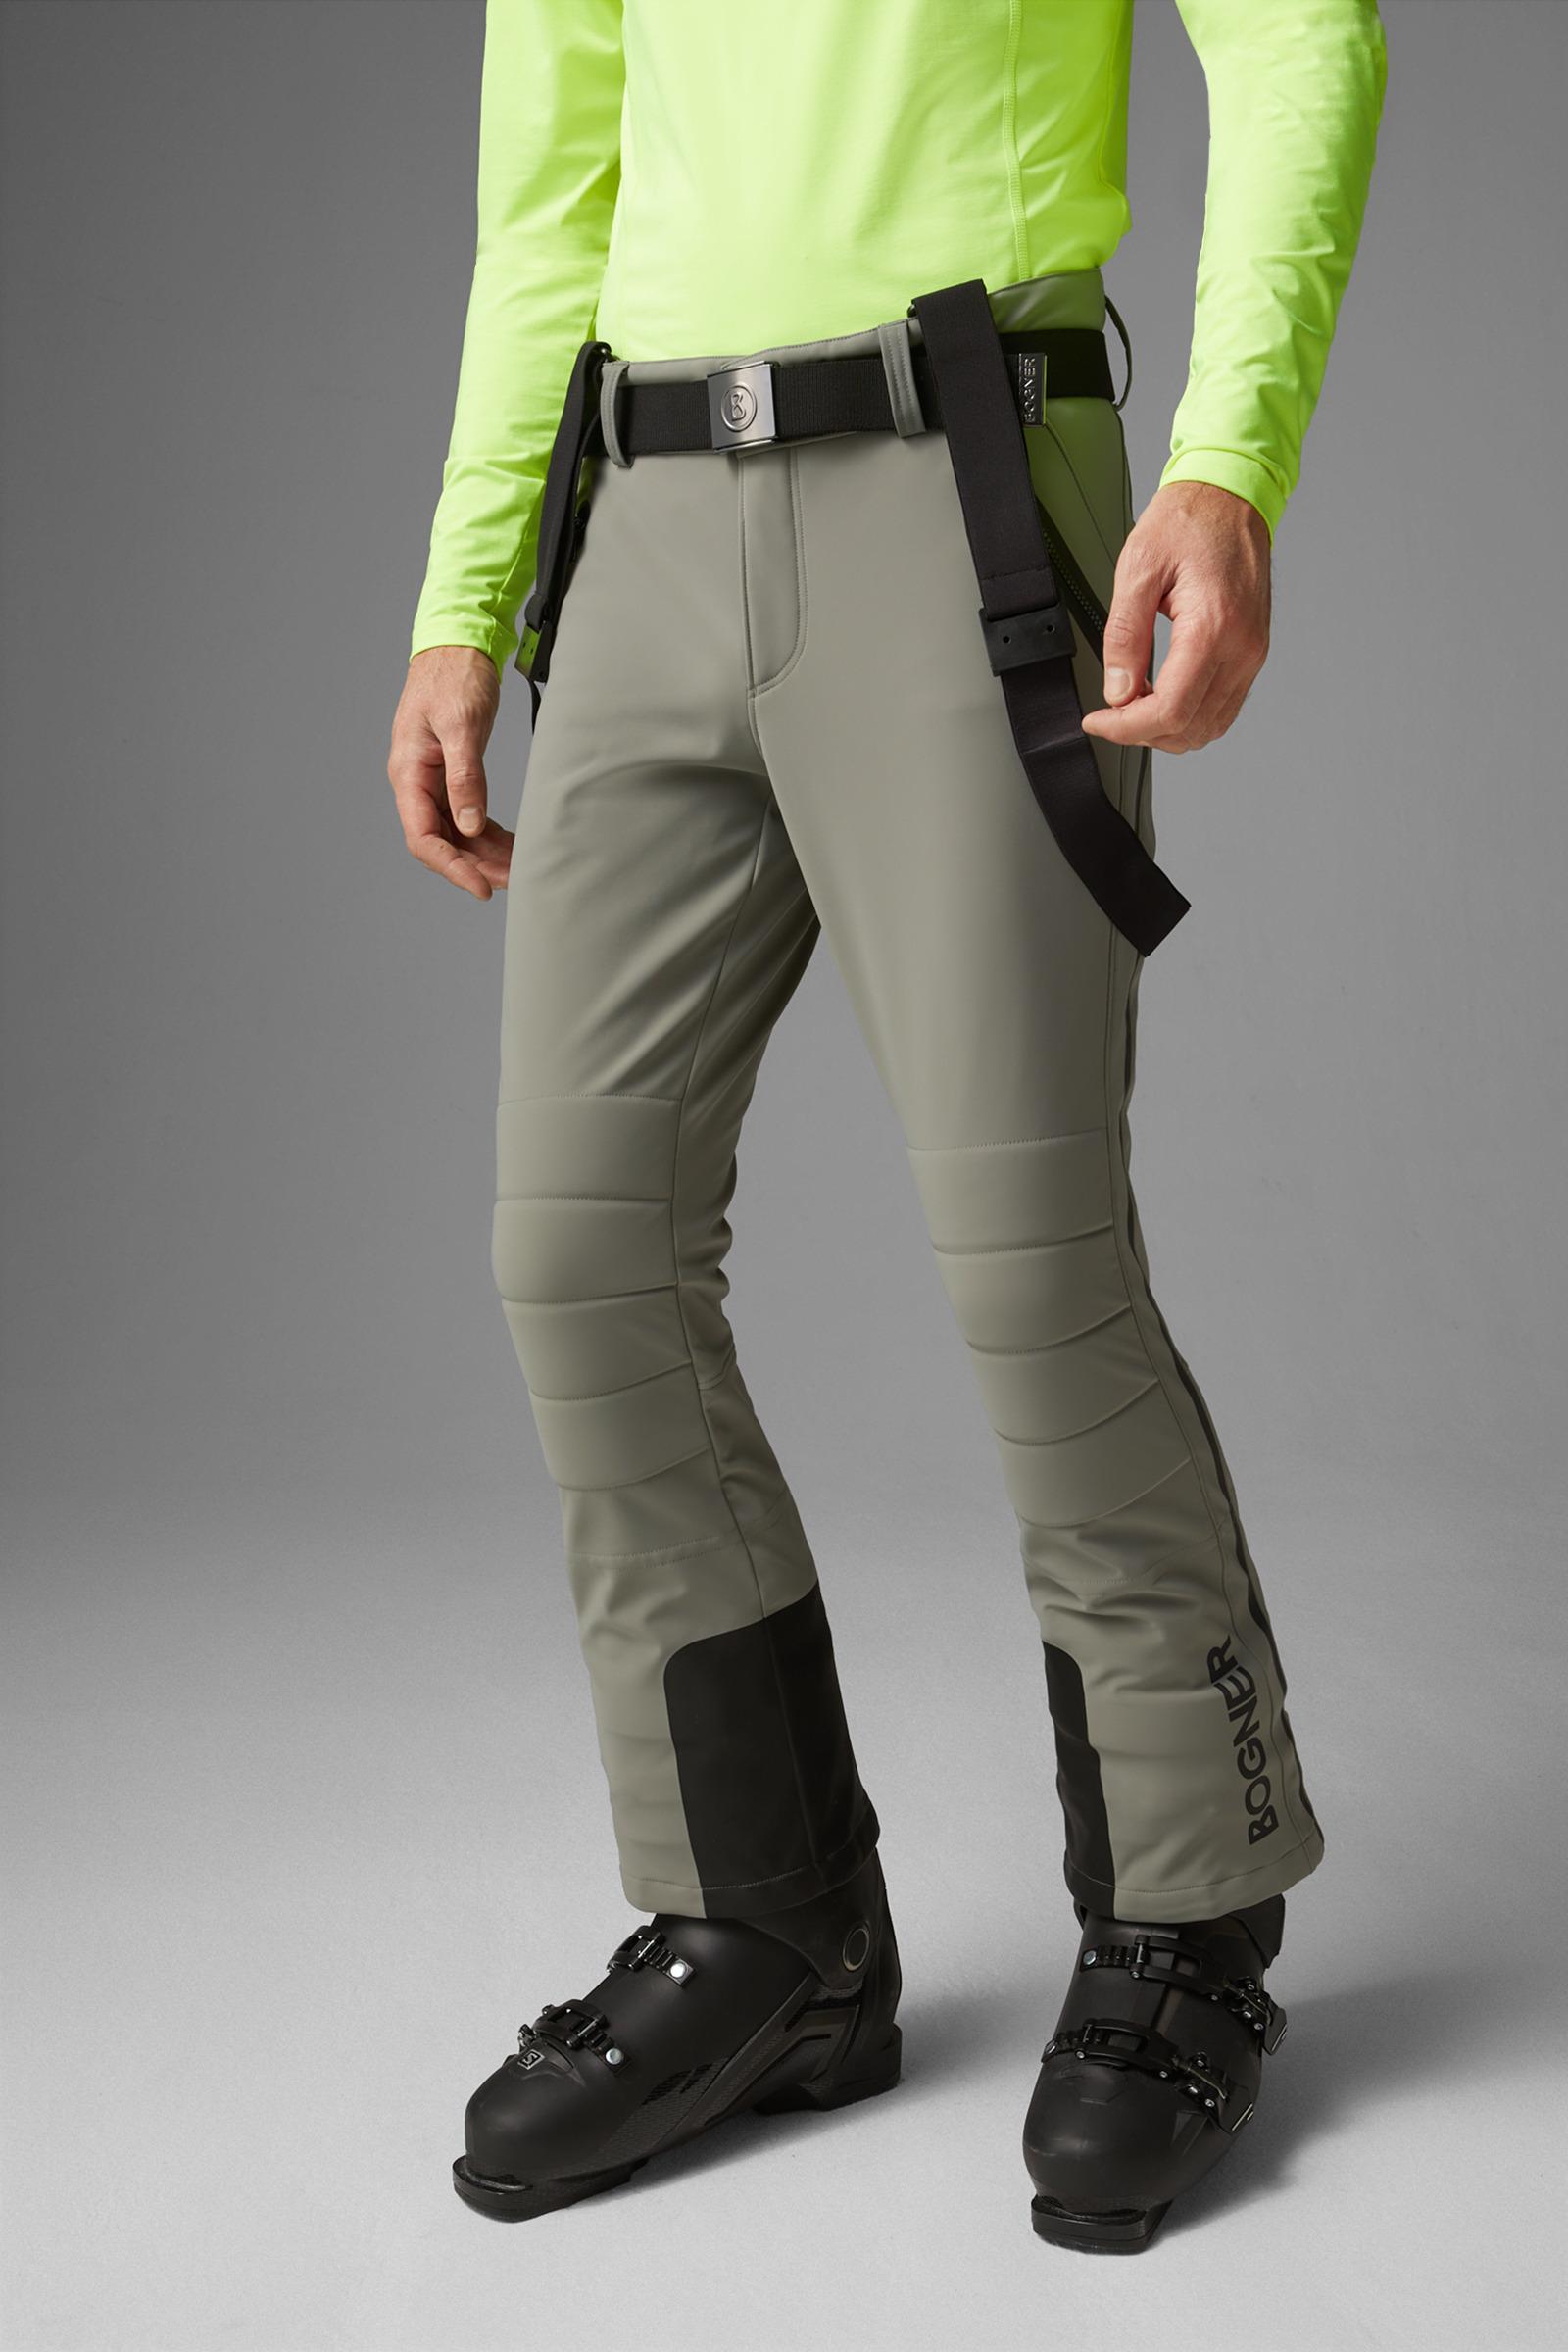 Bogner Curt Ski Trousers in Gray for Men